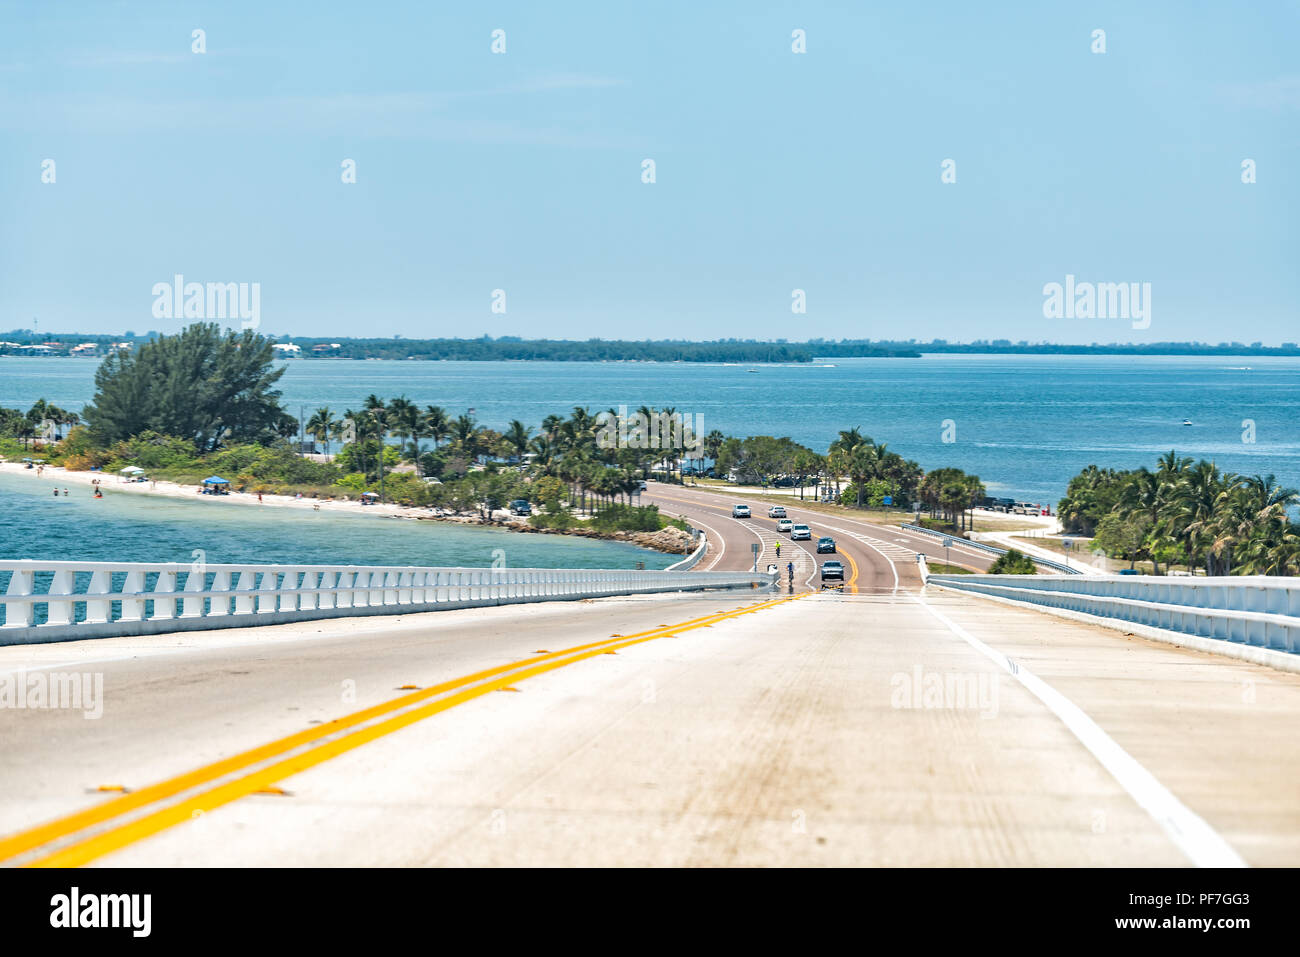 Sanibel Island, Stati Uniti d'America bay durante la giornata di sole, ponte a pedaggio Autostrada road causeway, acqua turchese vetture Foto Stock